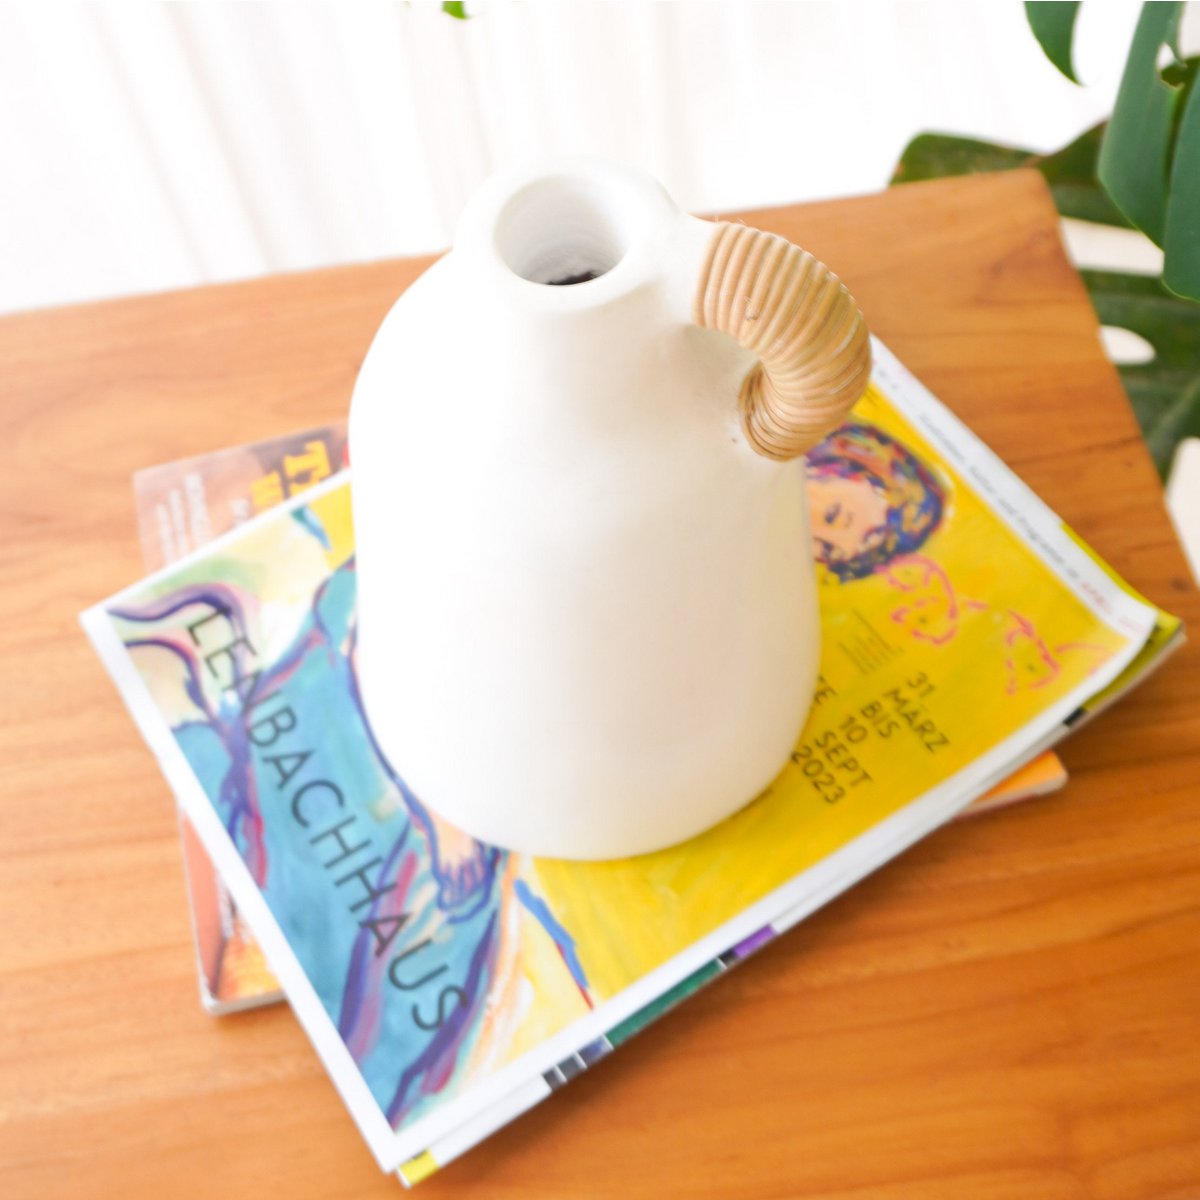 Vase blanc petit vase décoratif pour fleurs séchées ou fraîches coulé à la main en argile avec poignée en rotin SANA